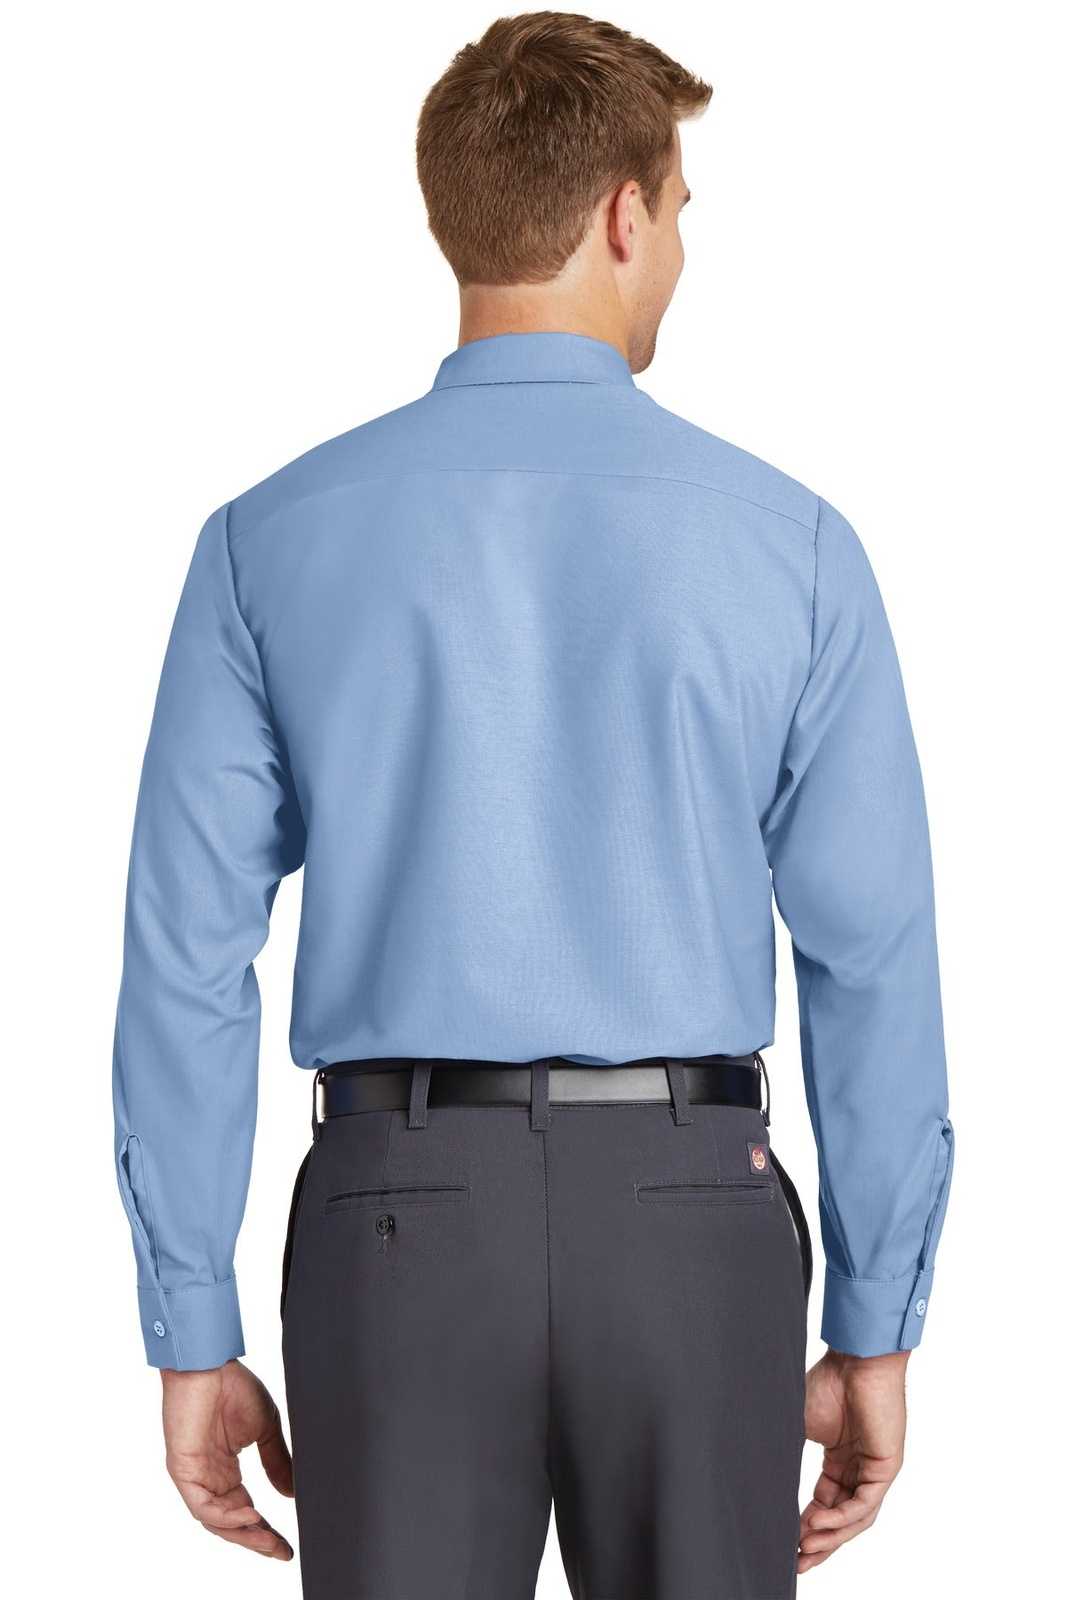 Red Kap SP14 Long Sleeve Industrial Work Shirt - Light Blue - HIT a Double - 1